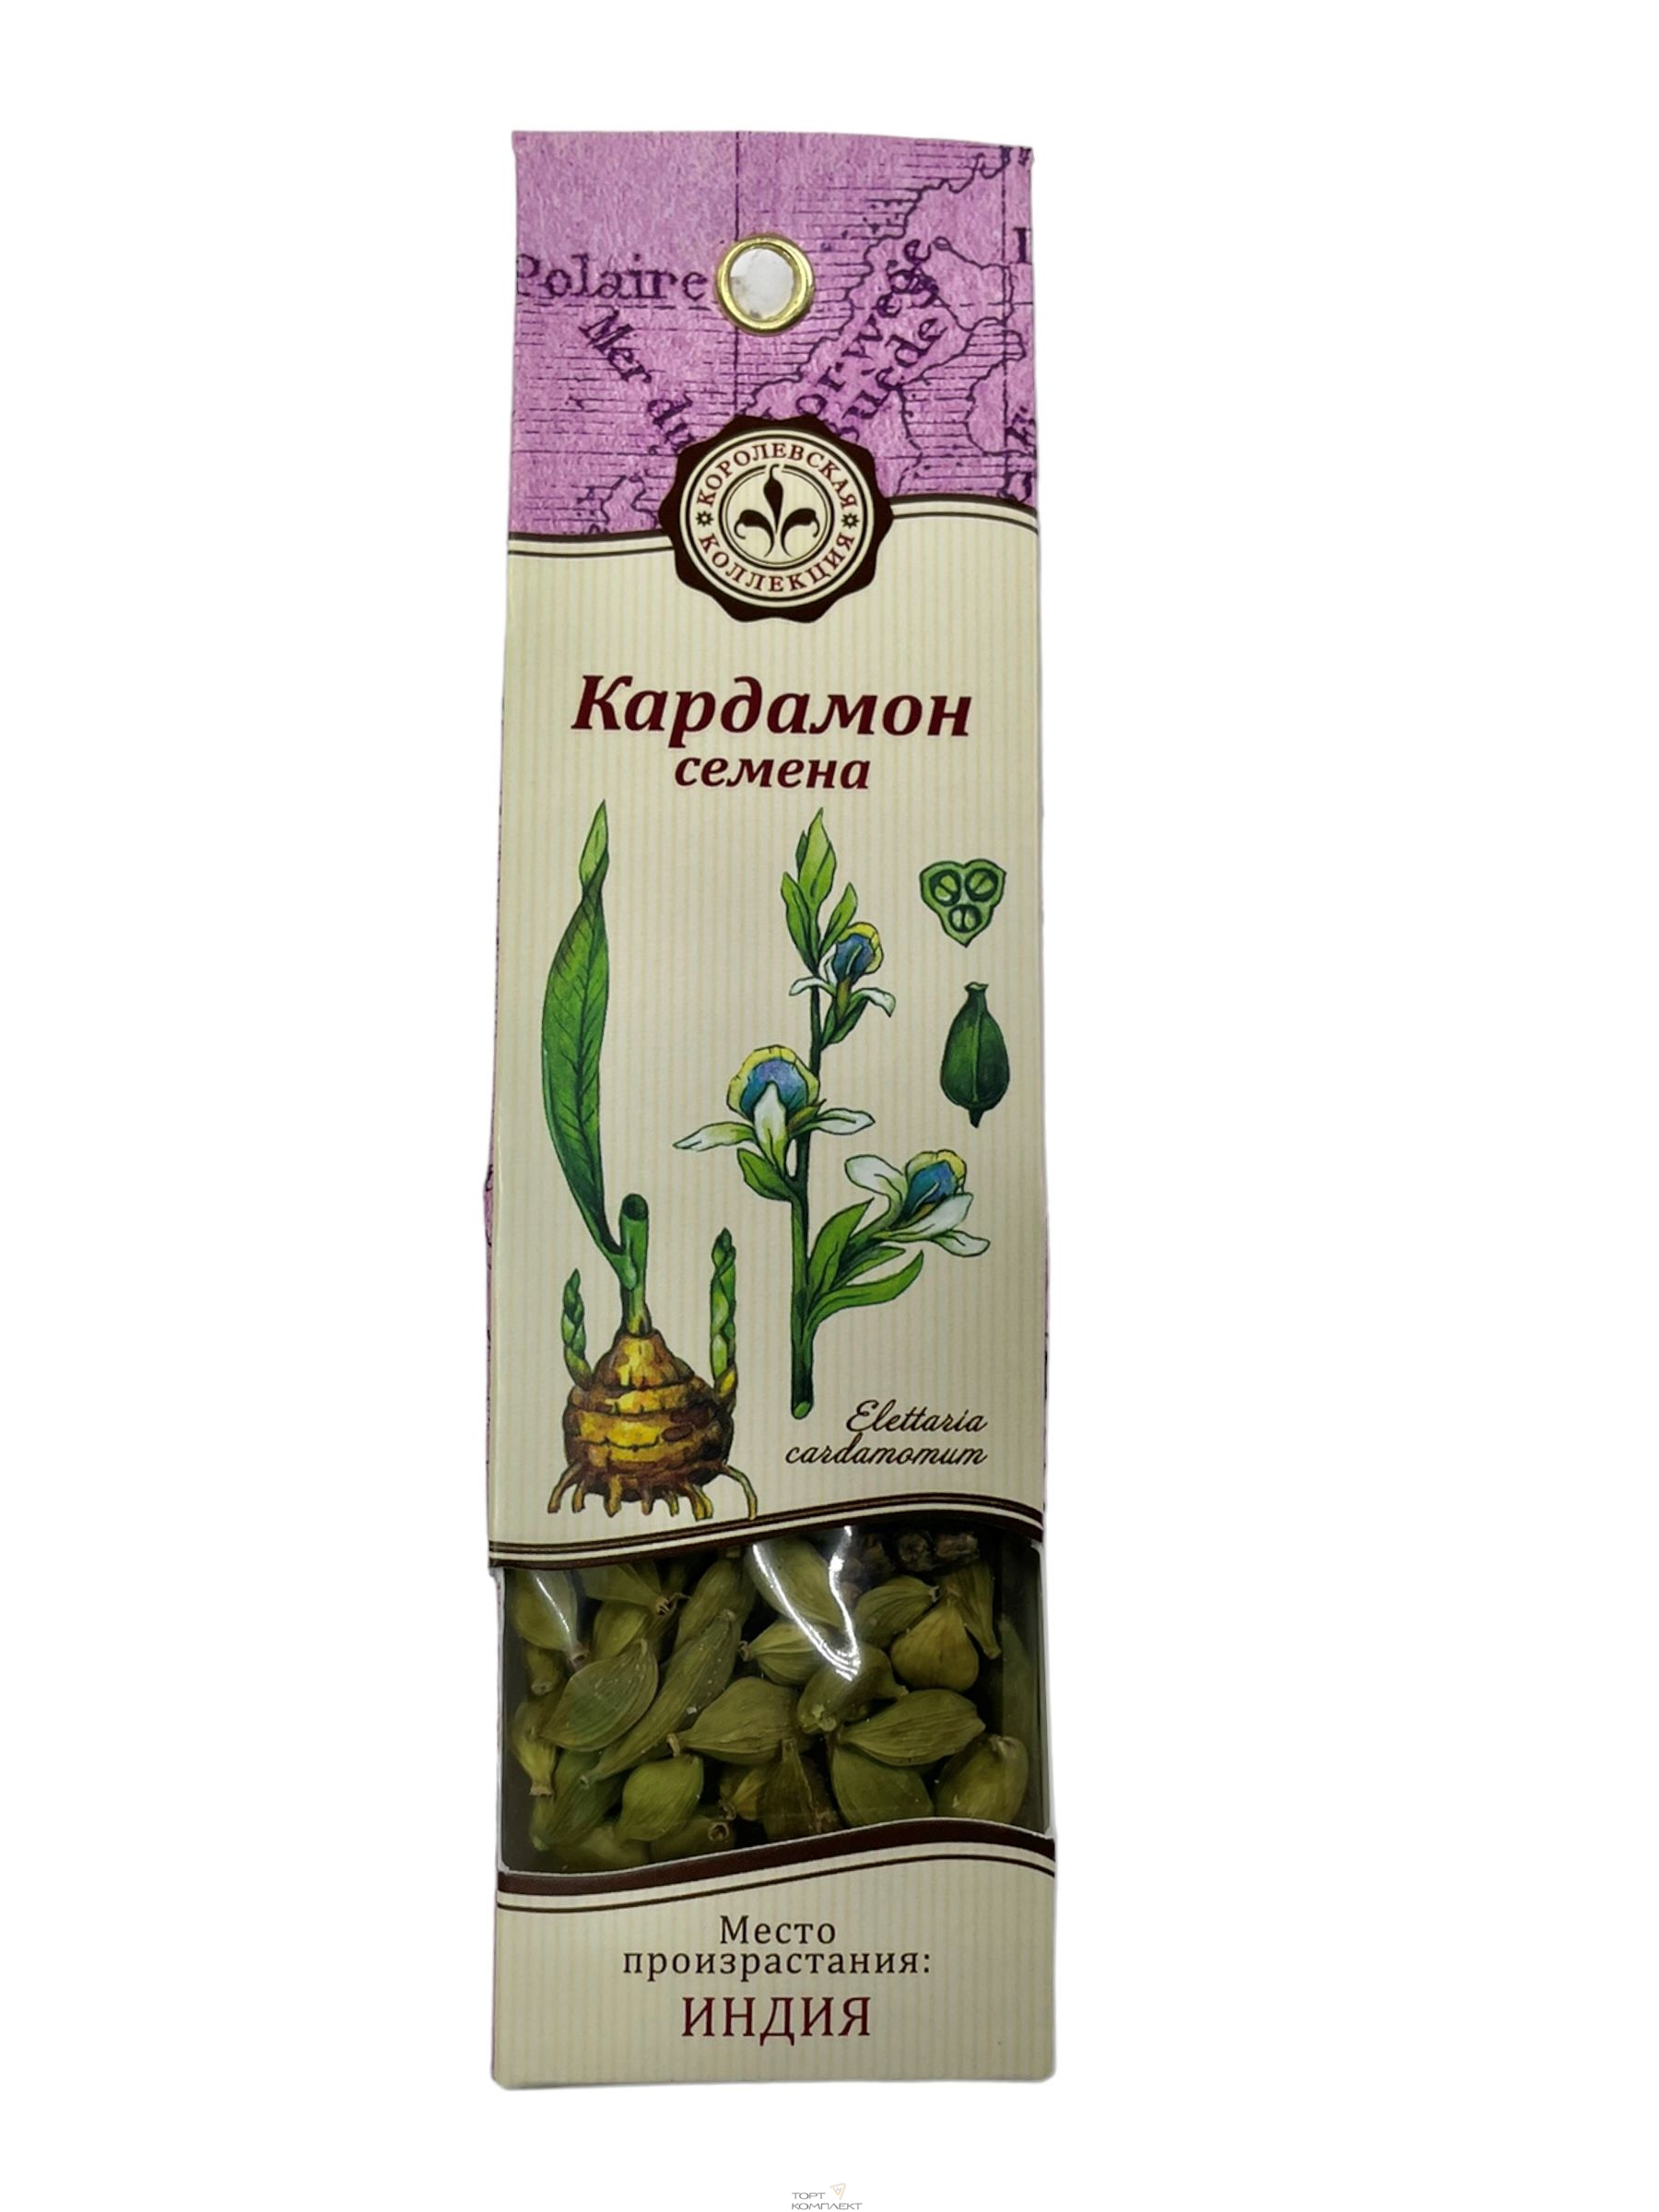 Купить Кардамон, семена "Королевская коллекция" 10 гр